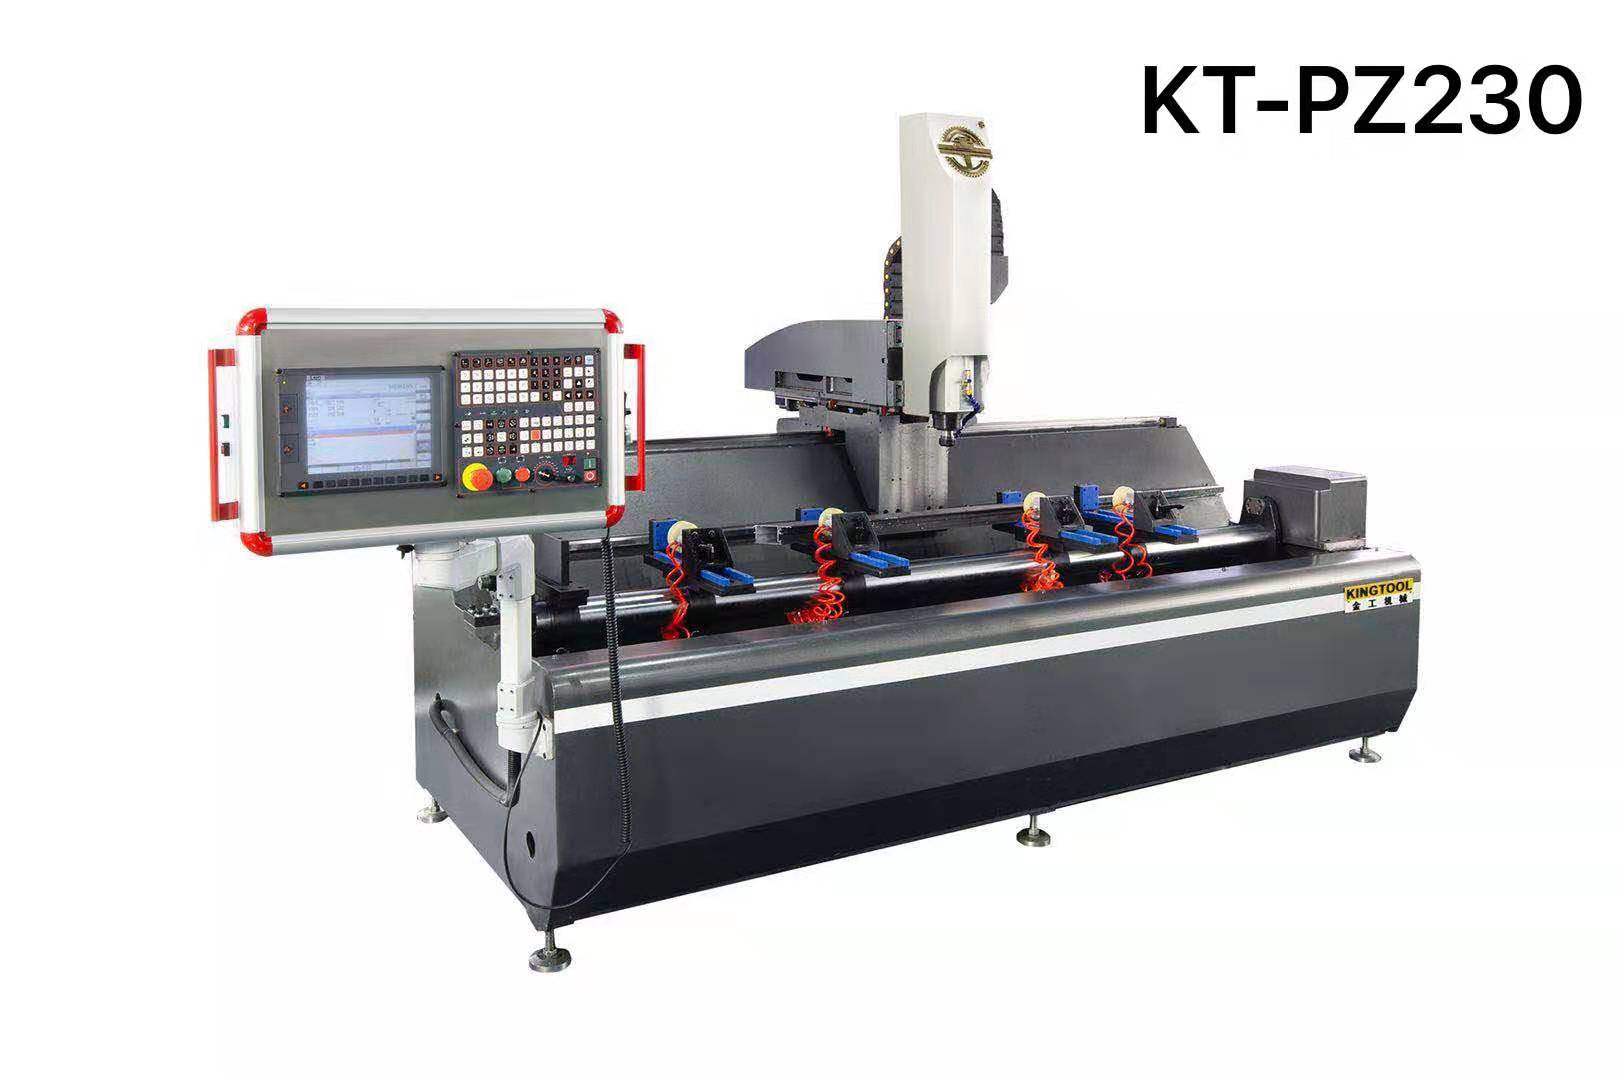 kingtool aluminium machinery Array image207